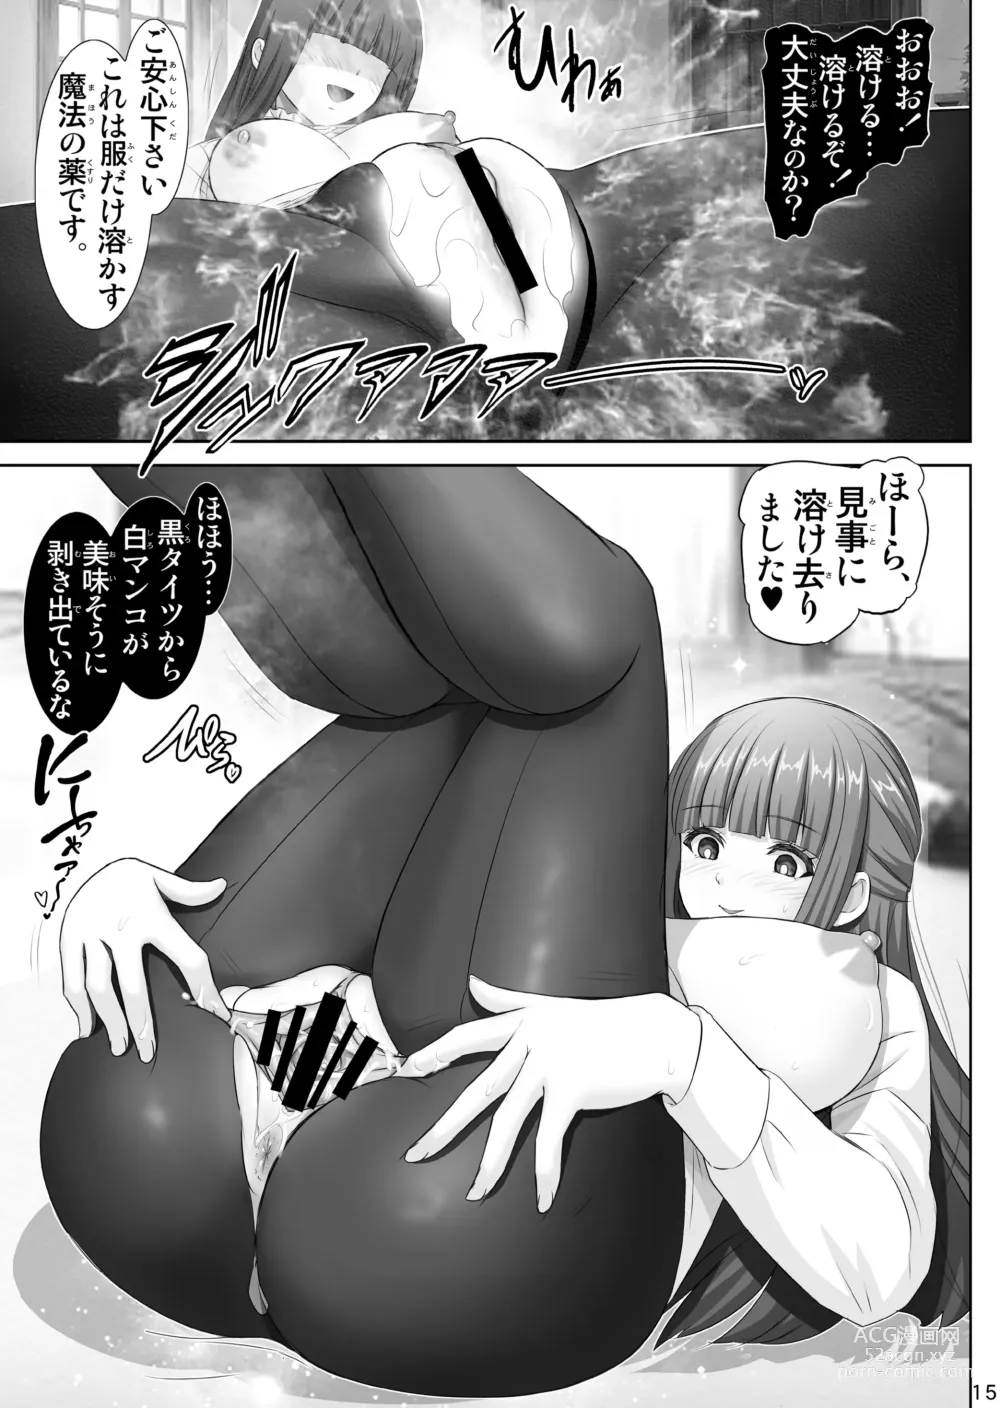 Page 15 of doujinshi Fern no Yuuwaku - Ferns Versuchung